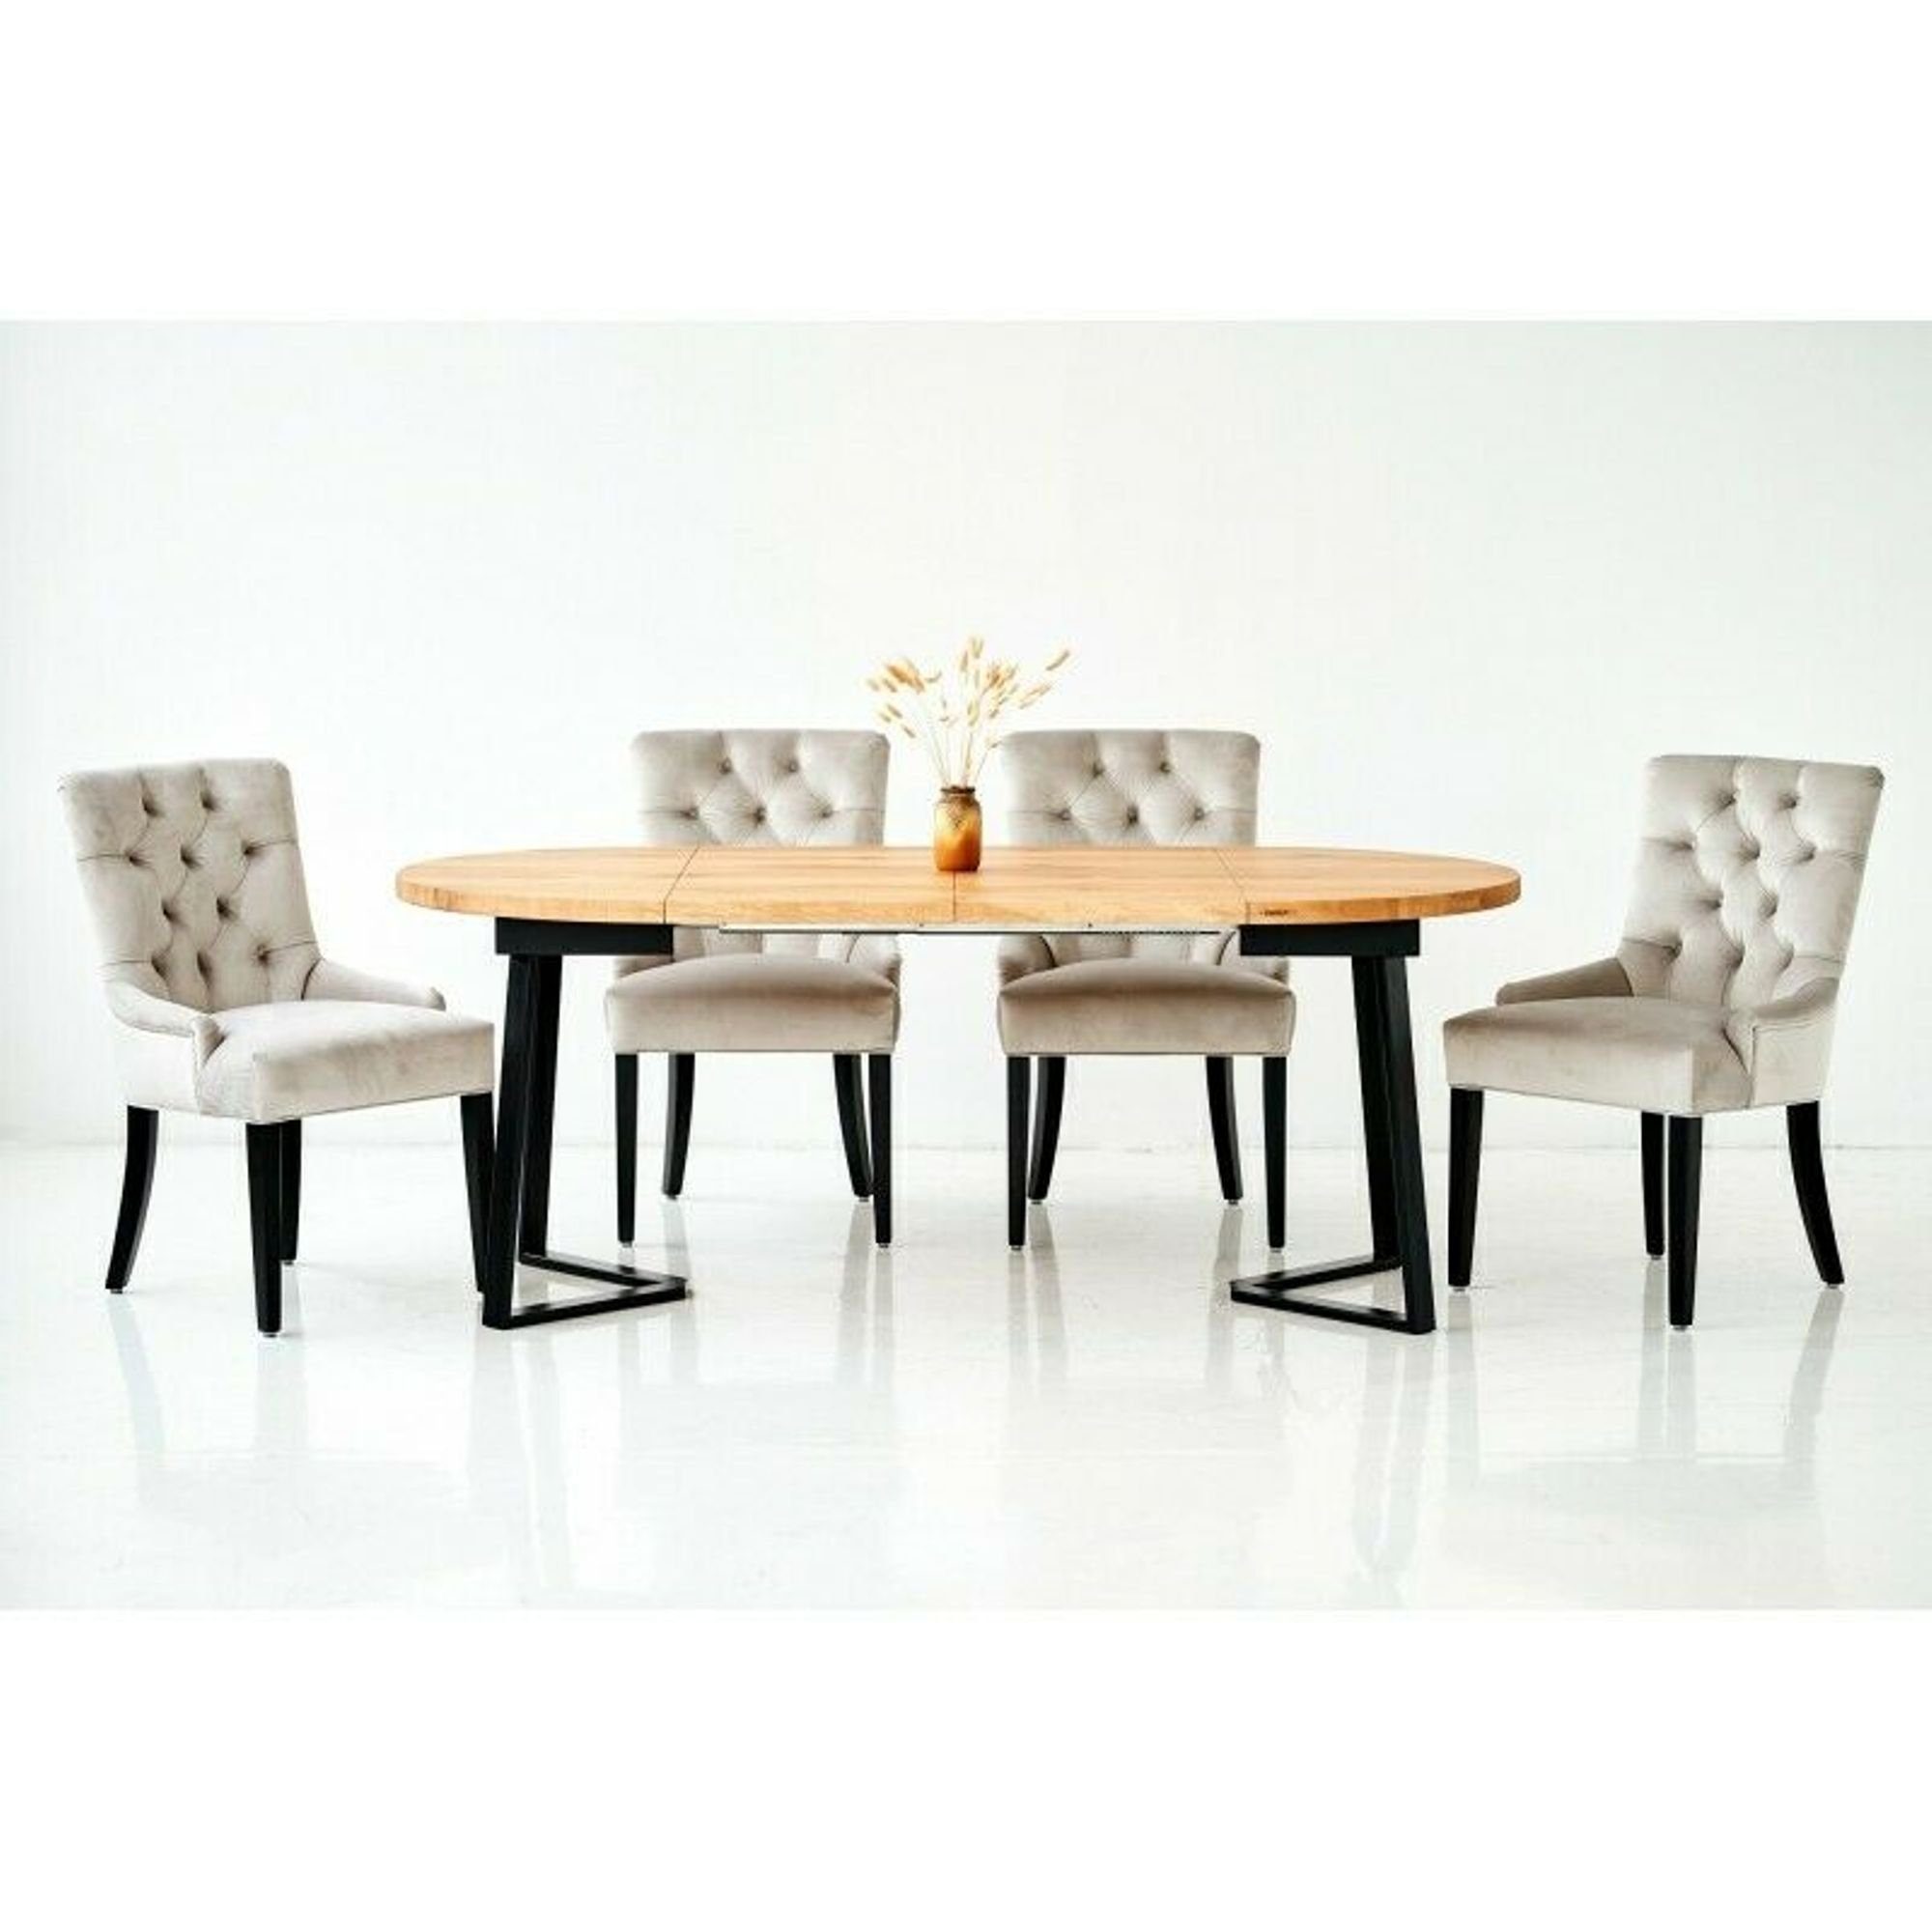 Lehnstühle Gruppe 6 Stühle Essgruppe, Chesterfield Stuhl Design Esszimmer Holz + Tisch JVmoebel Sitz